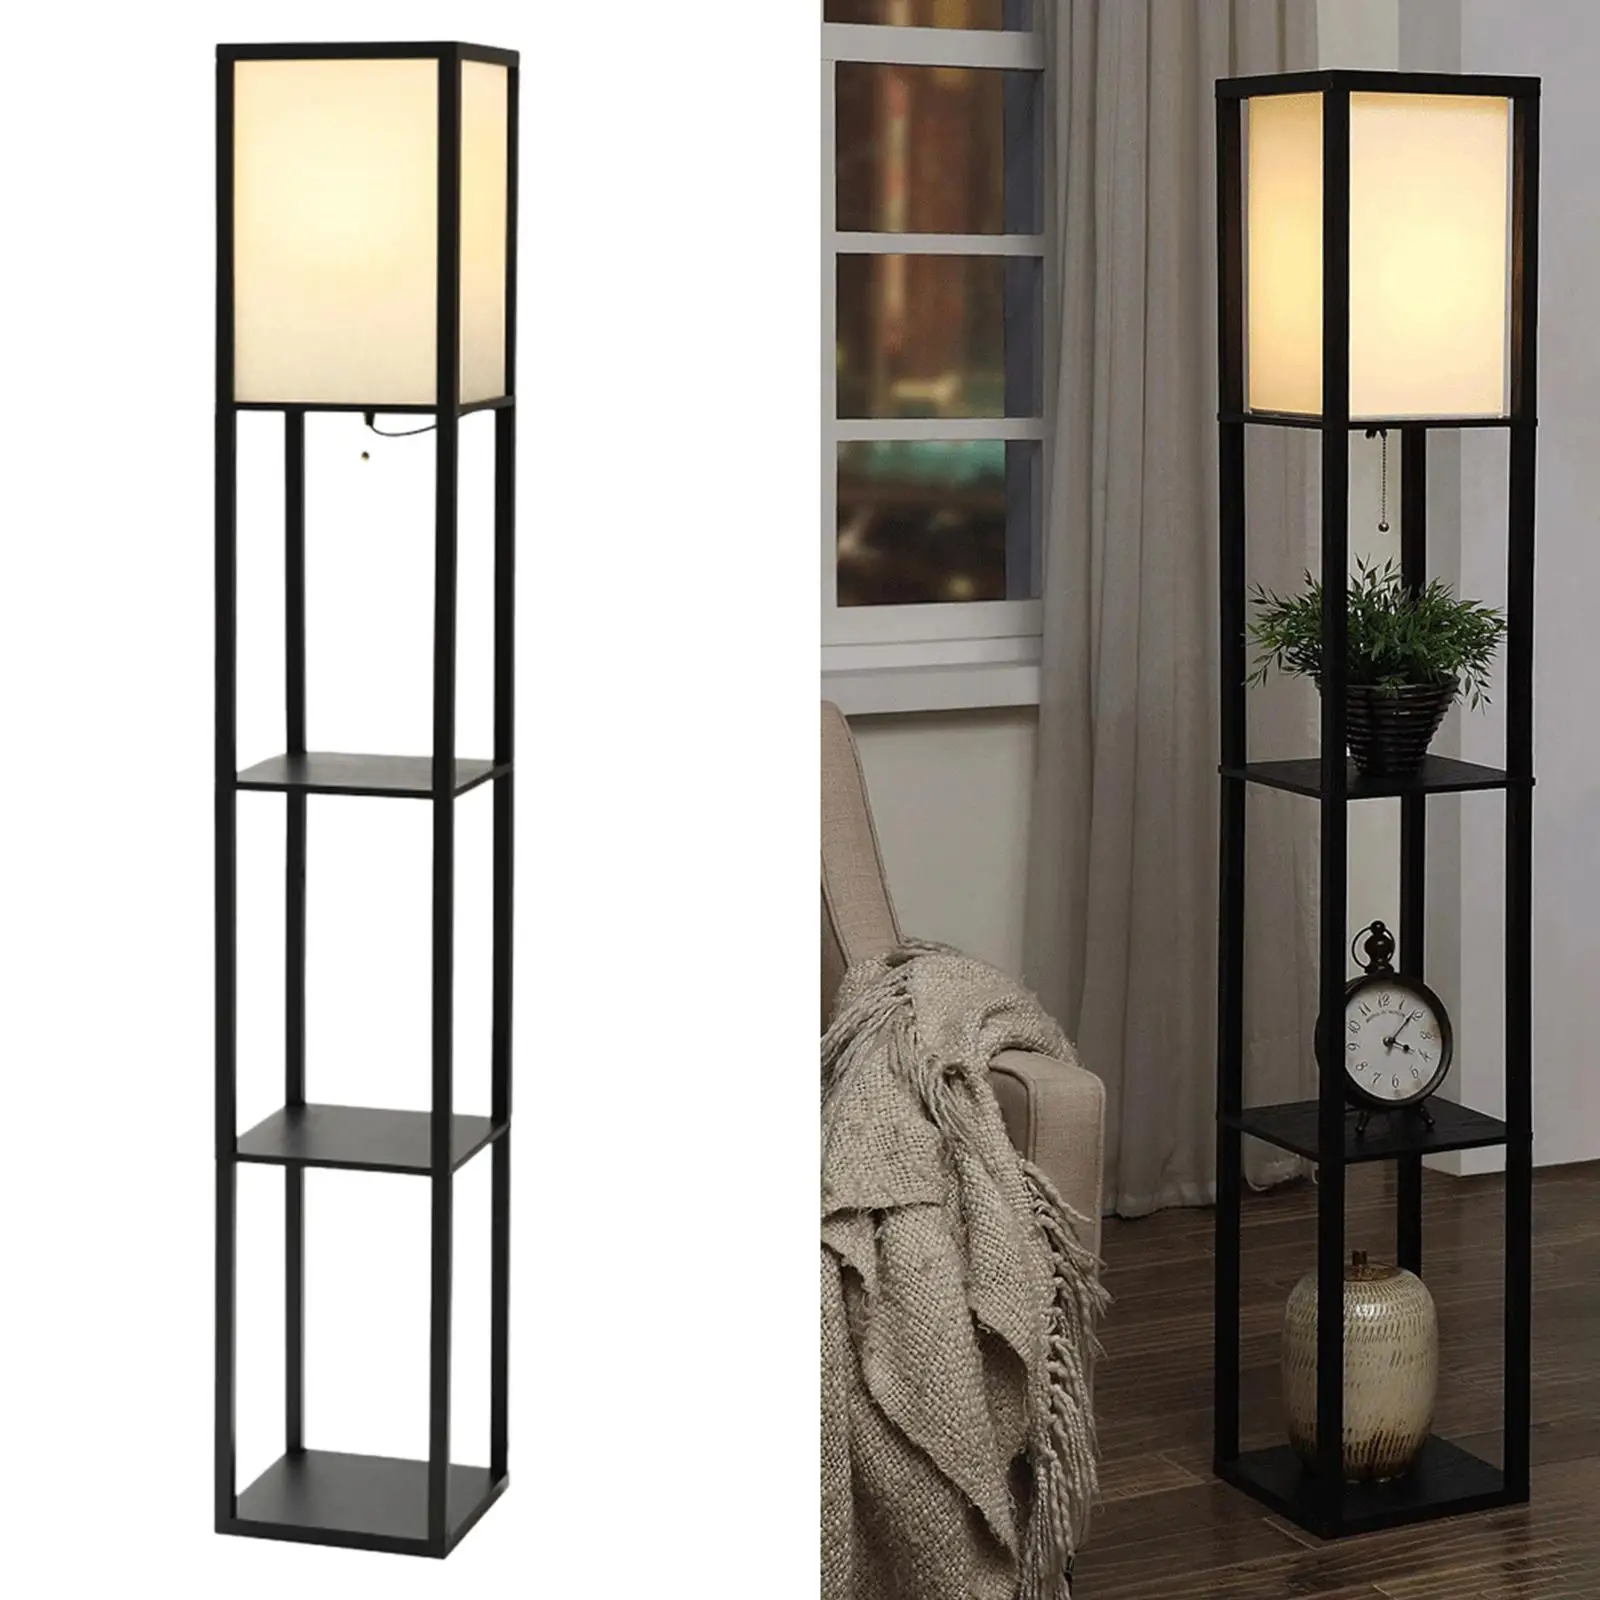 Shelf Floor Lamp with 3 Display Storage Shelves Organizer Simple Standing 4 Tier for NightStand Bedside Reading Indoor Bedroom